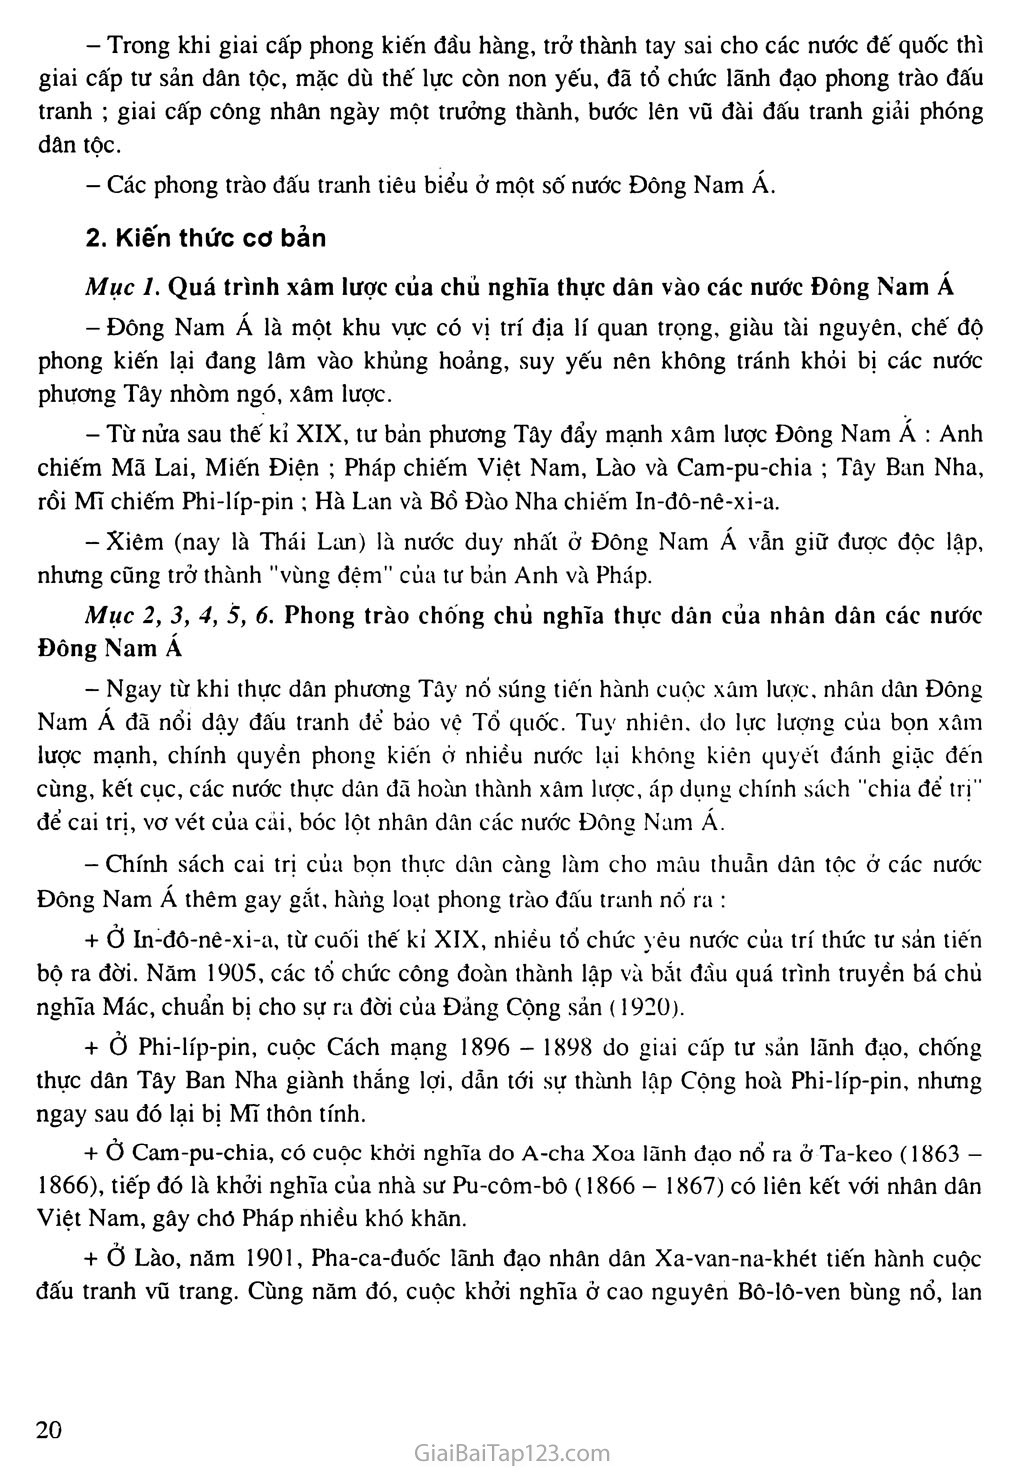 Bài 4: Các nước Đông Nam Á (Cuối thế kỷ XIX - đầu thế kỷ XX) trang 2